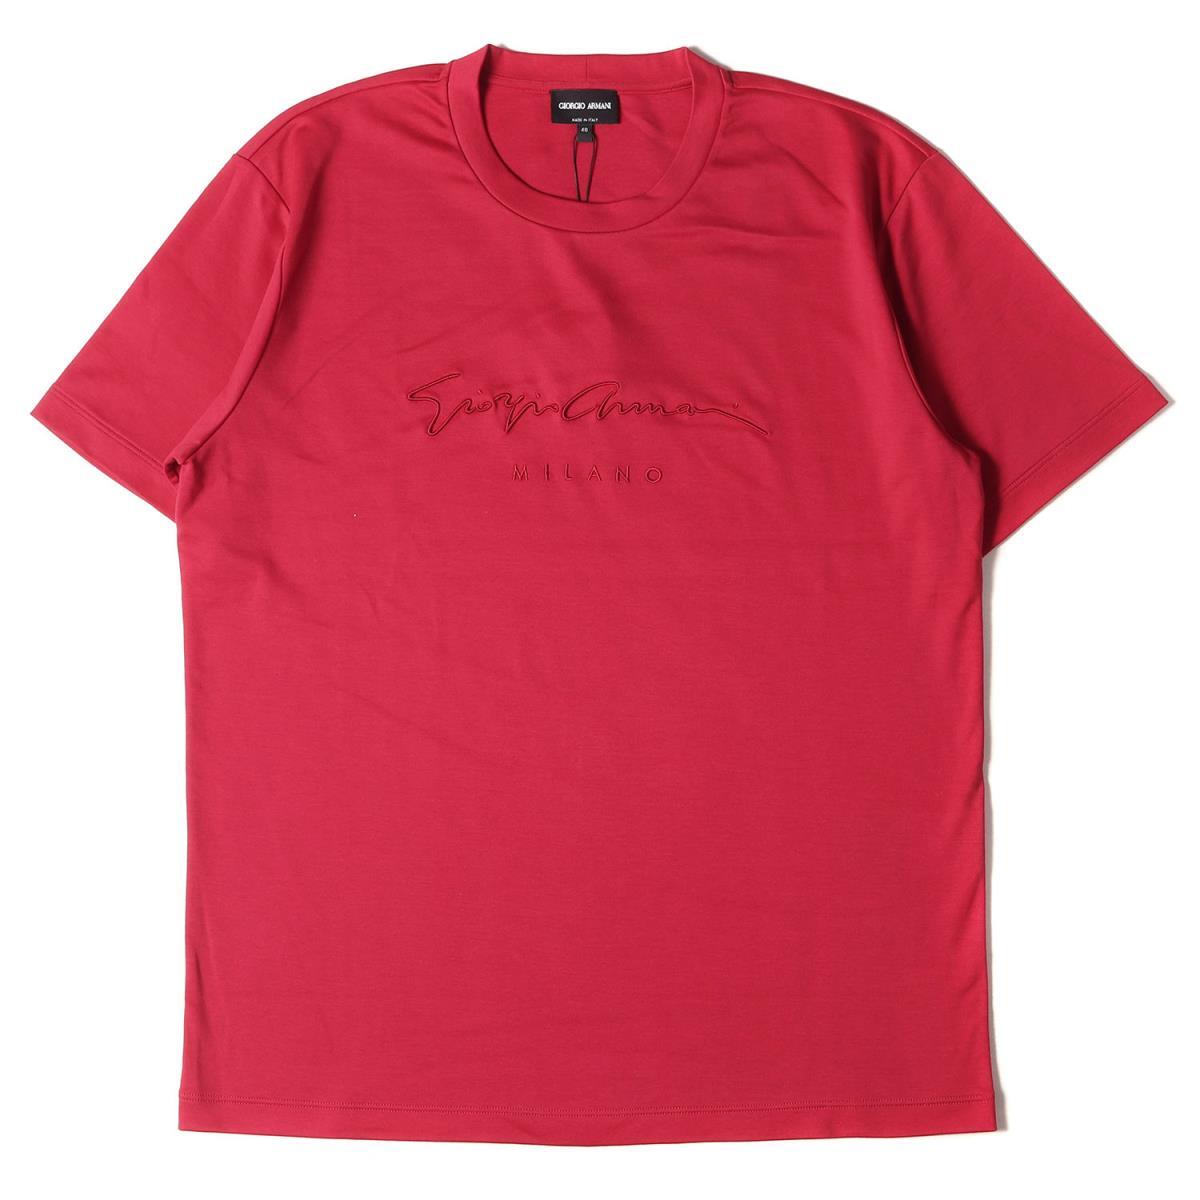 新品 GIORGIO ARMANI ジョルジオアルマーニ Tシャツ サイズ:48 21SS ブランドロゴ刺繍 クルーネック Tシャツ レッド 48 トップス_画像1